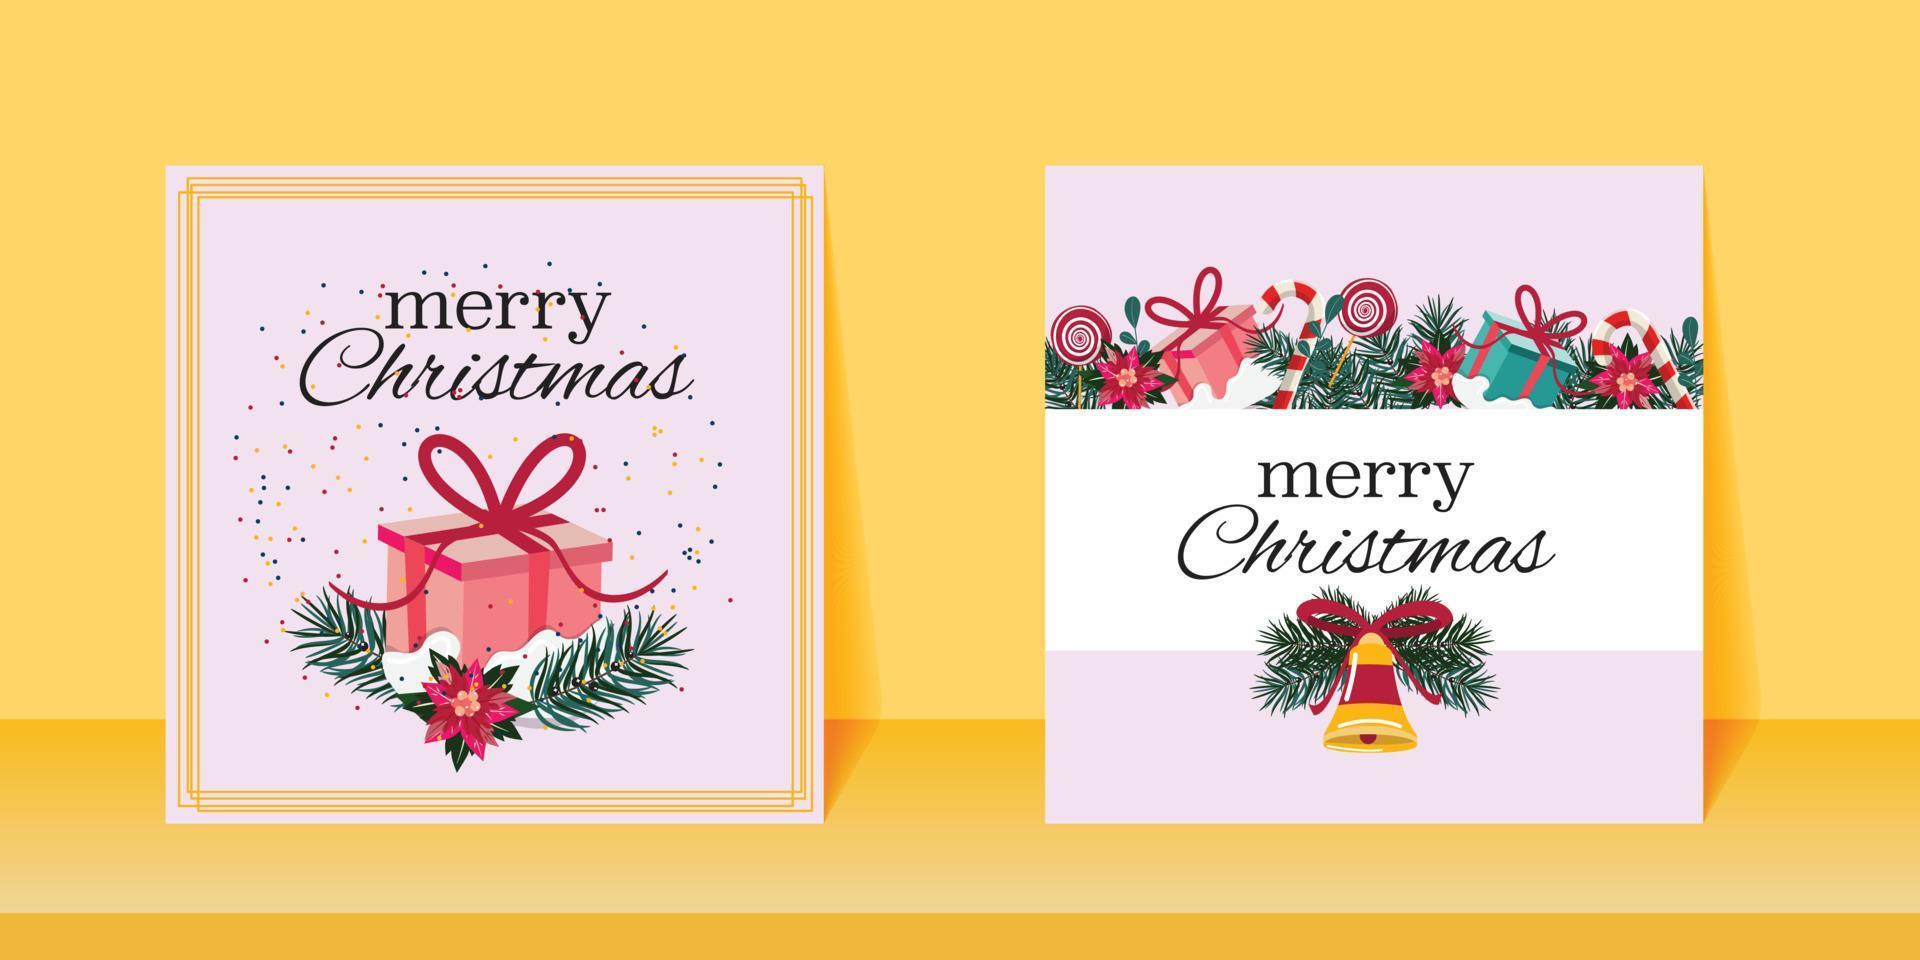 pastel roze vierkante kerstkaarten met een belletje, dennentakken, geschenkdoosjes, snoep en bloemen. vrolijke kerstbanners. leuke vierkante wenskaarten voor Kerstmis. vector